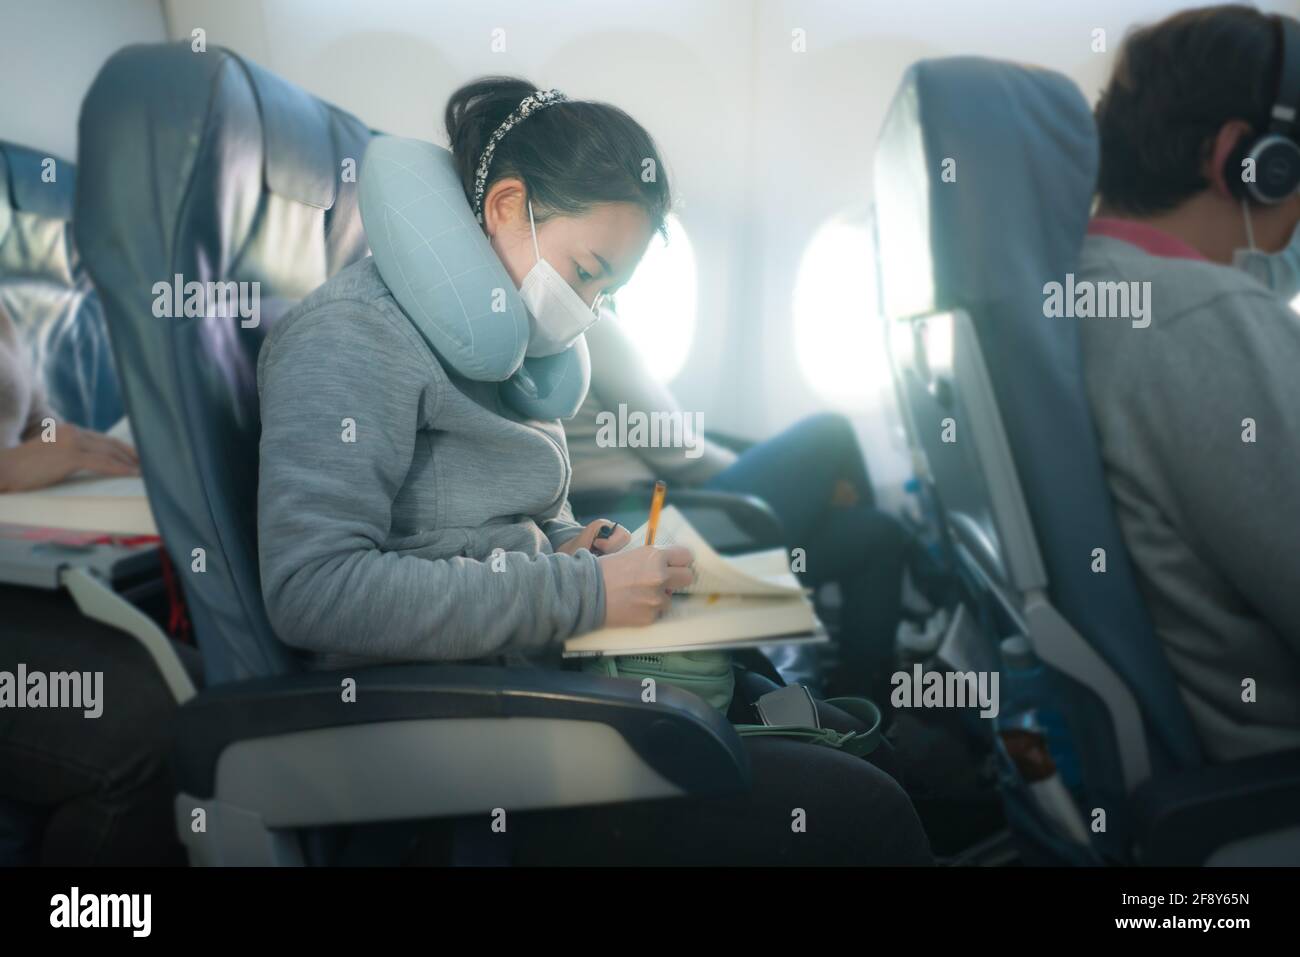 volando en tiempos de covid19 - joven dulce y lindo Mujer coreana asiática con máscara sentada en la cabina del avión leer libro o novela disfrutando del vuelo Foto de stock